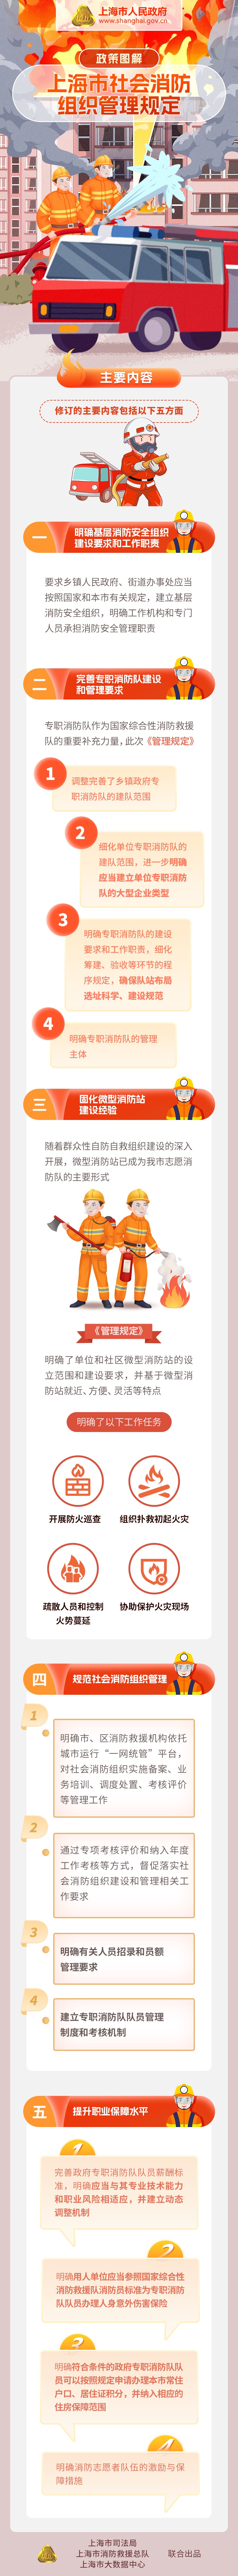 政策图解《上海市社会消防组织管理规定》.jpeg